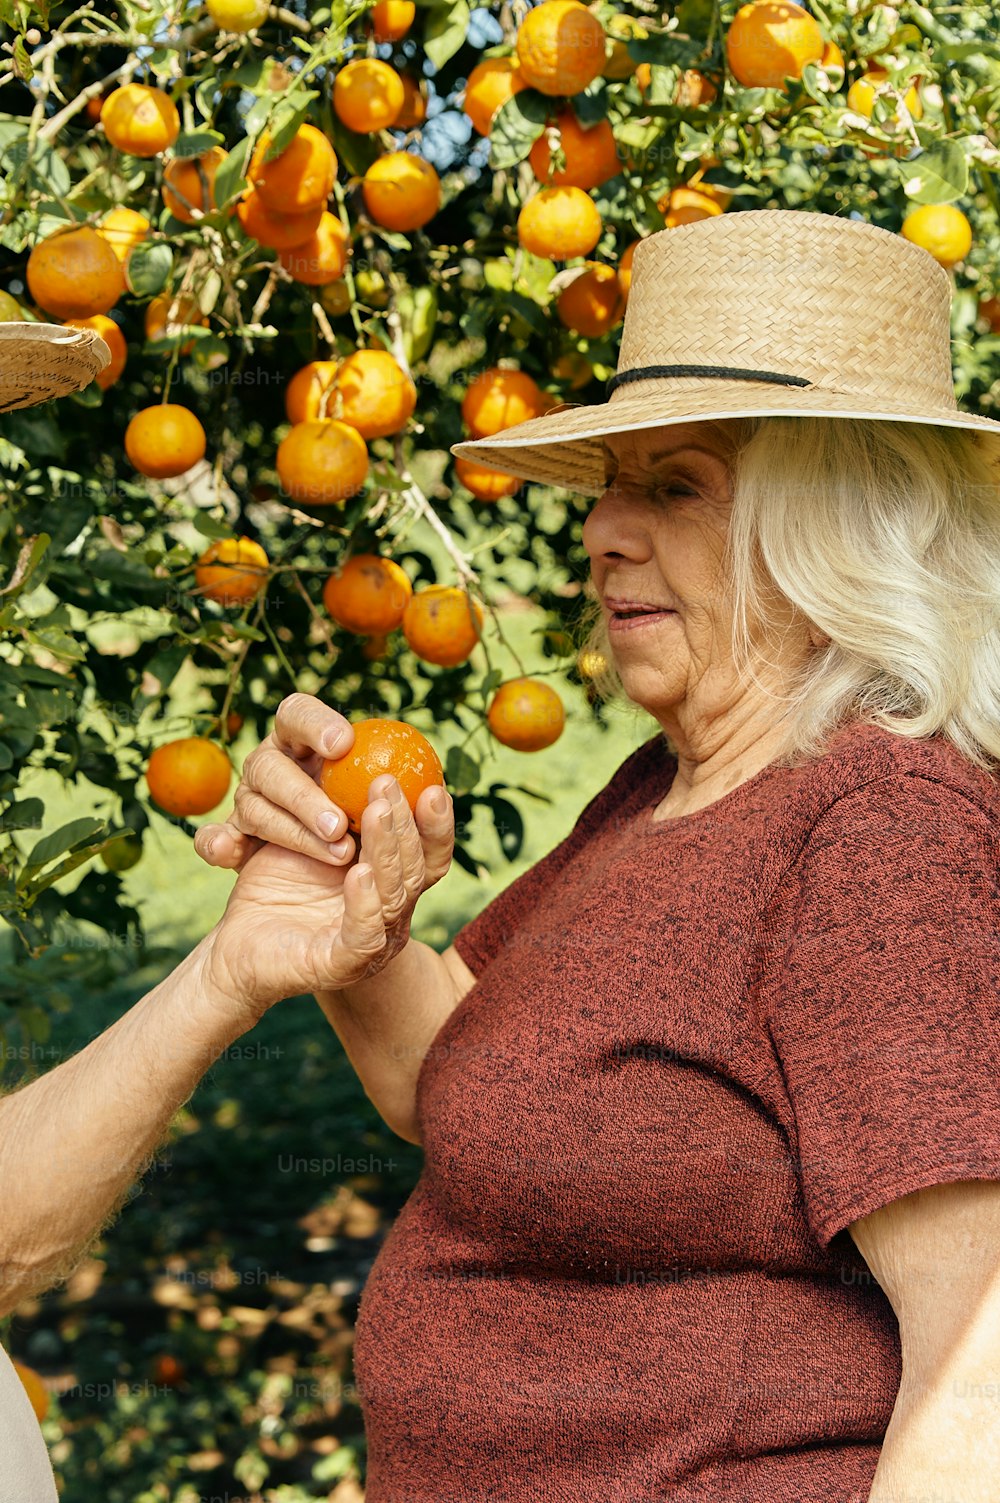 Une femme coiffée d’un chapeau de paille cueillant des oranges dans un arbre